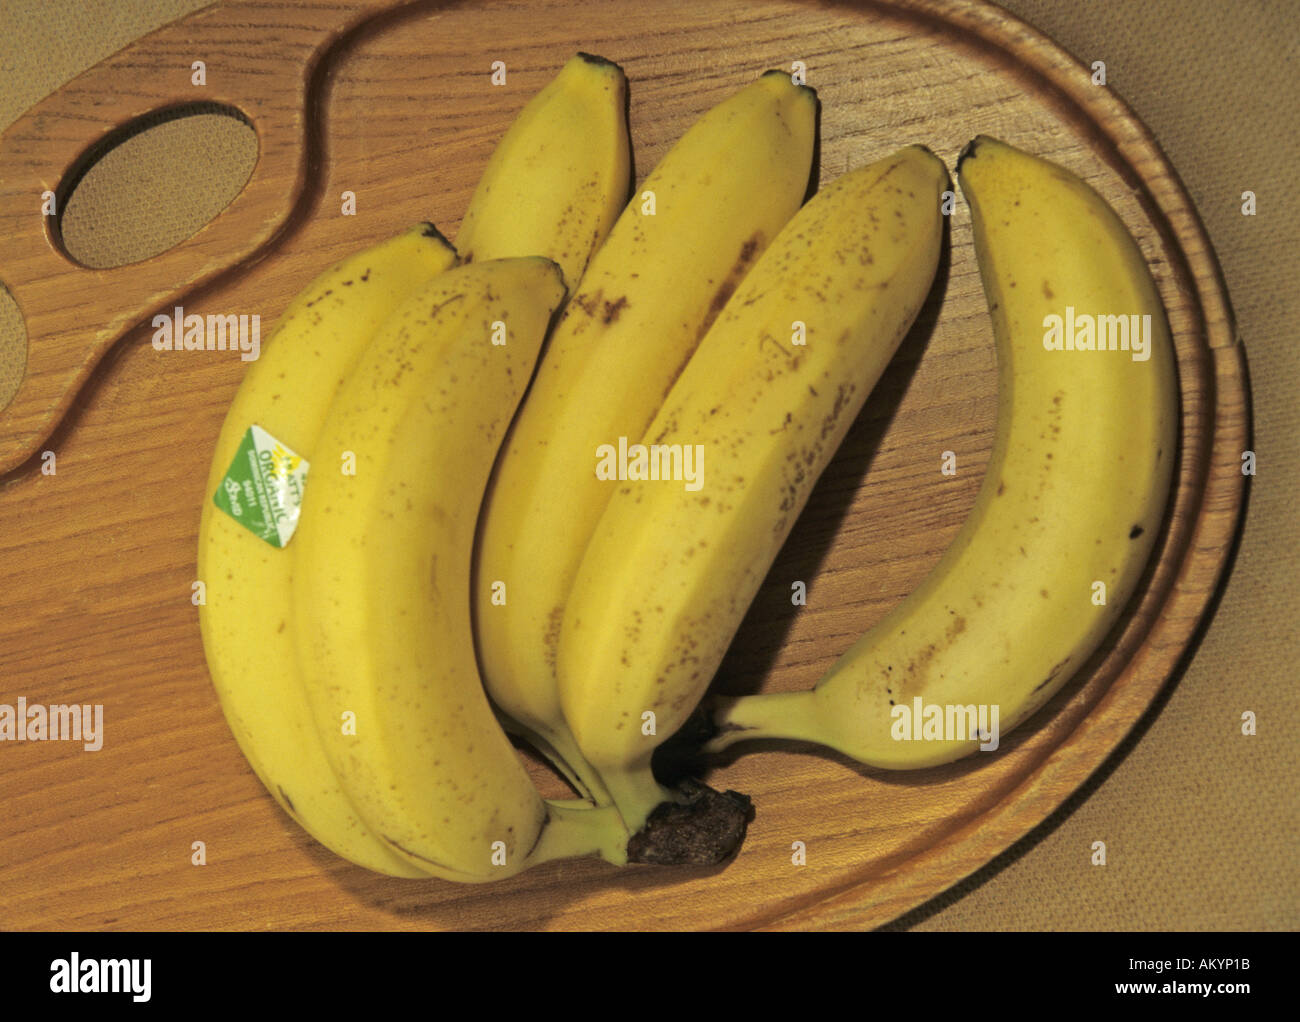 organic bananas on tray Stock Photo